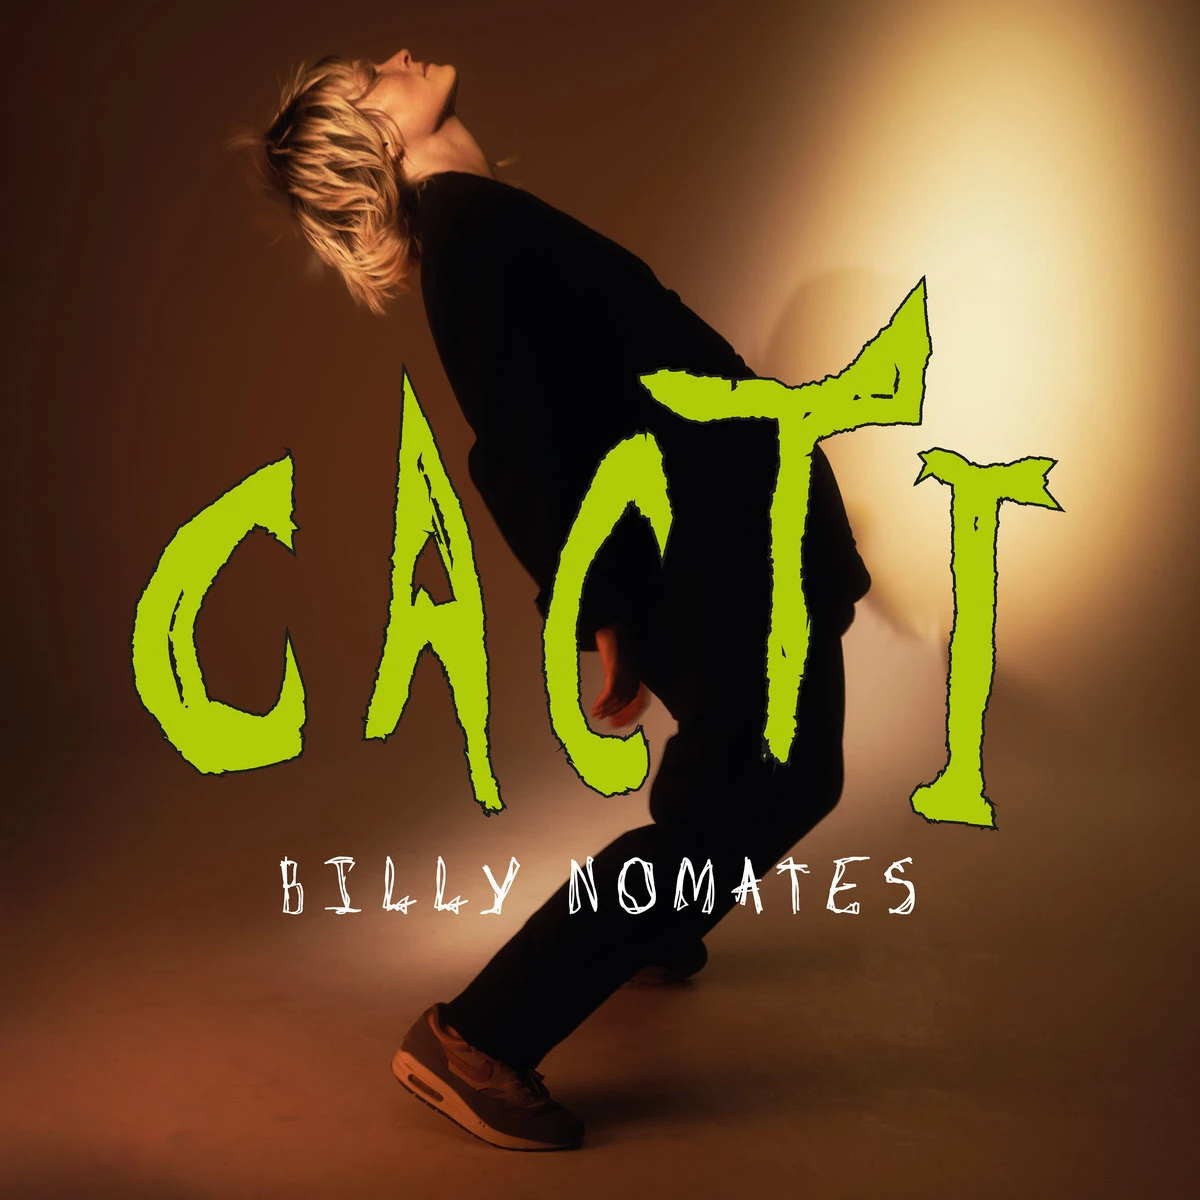 CACTI, Album by Billynomates